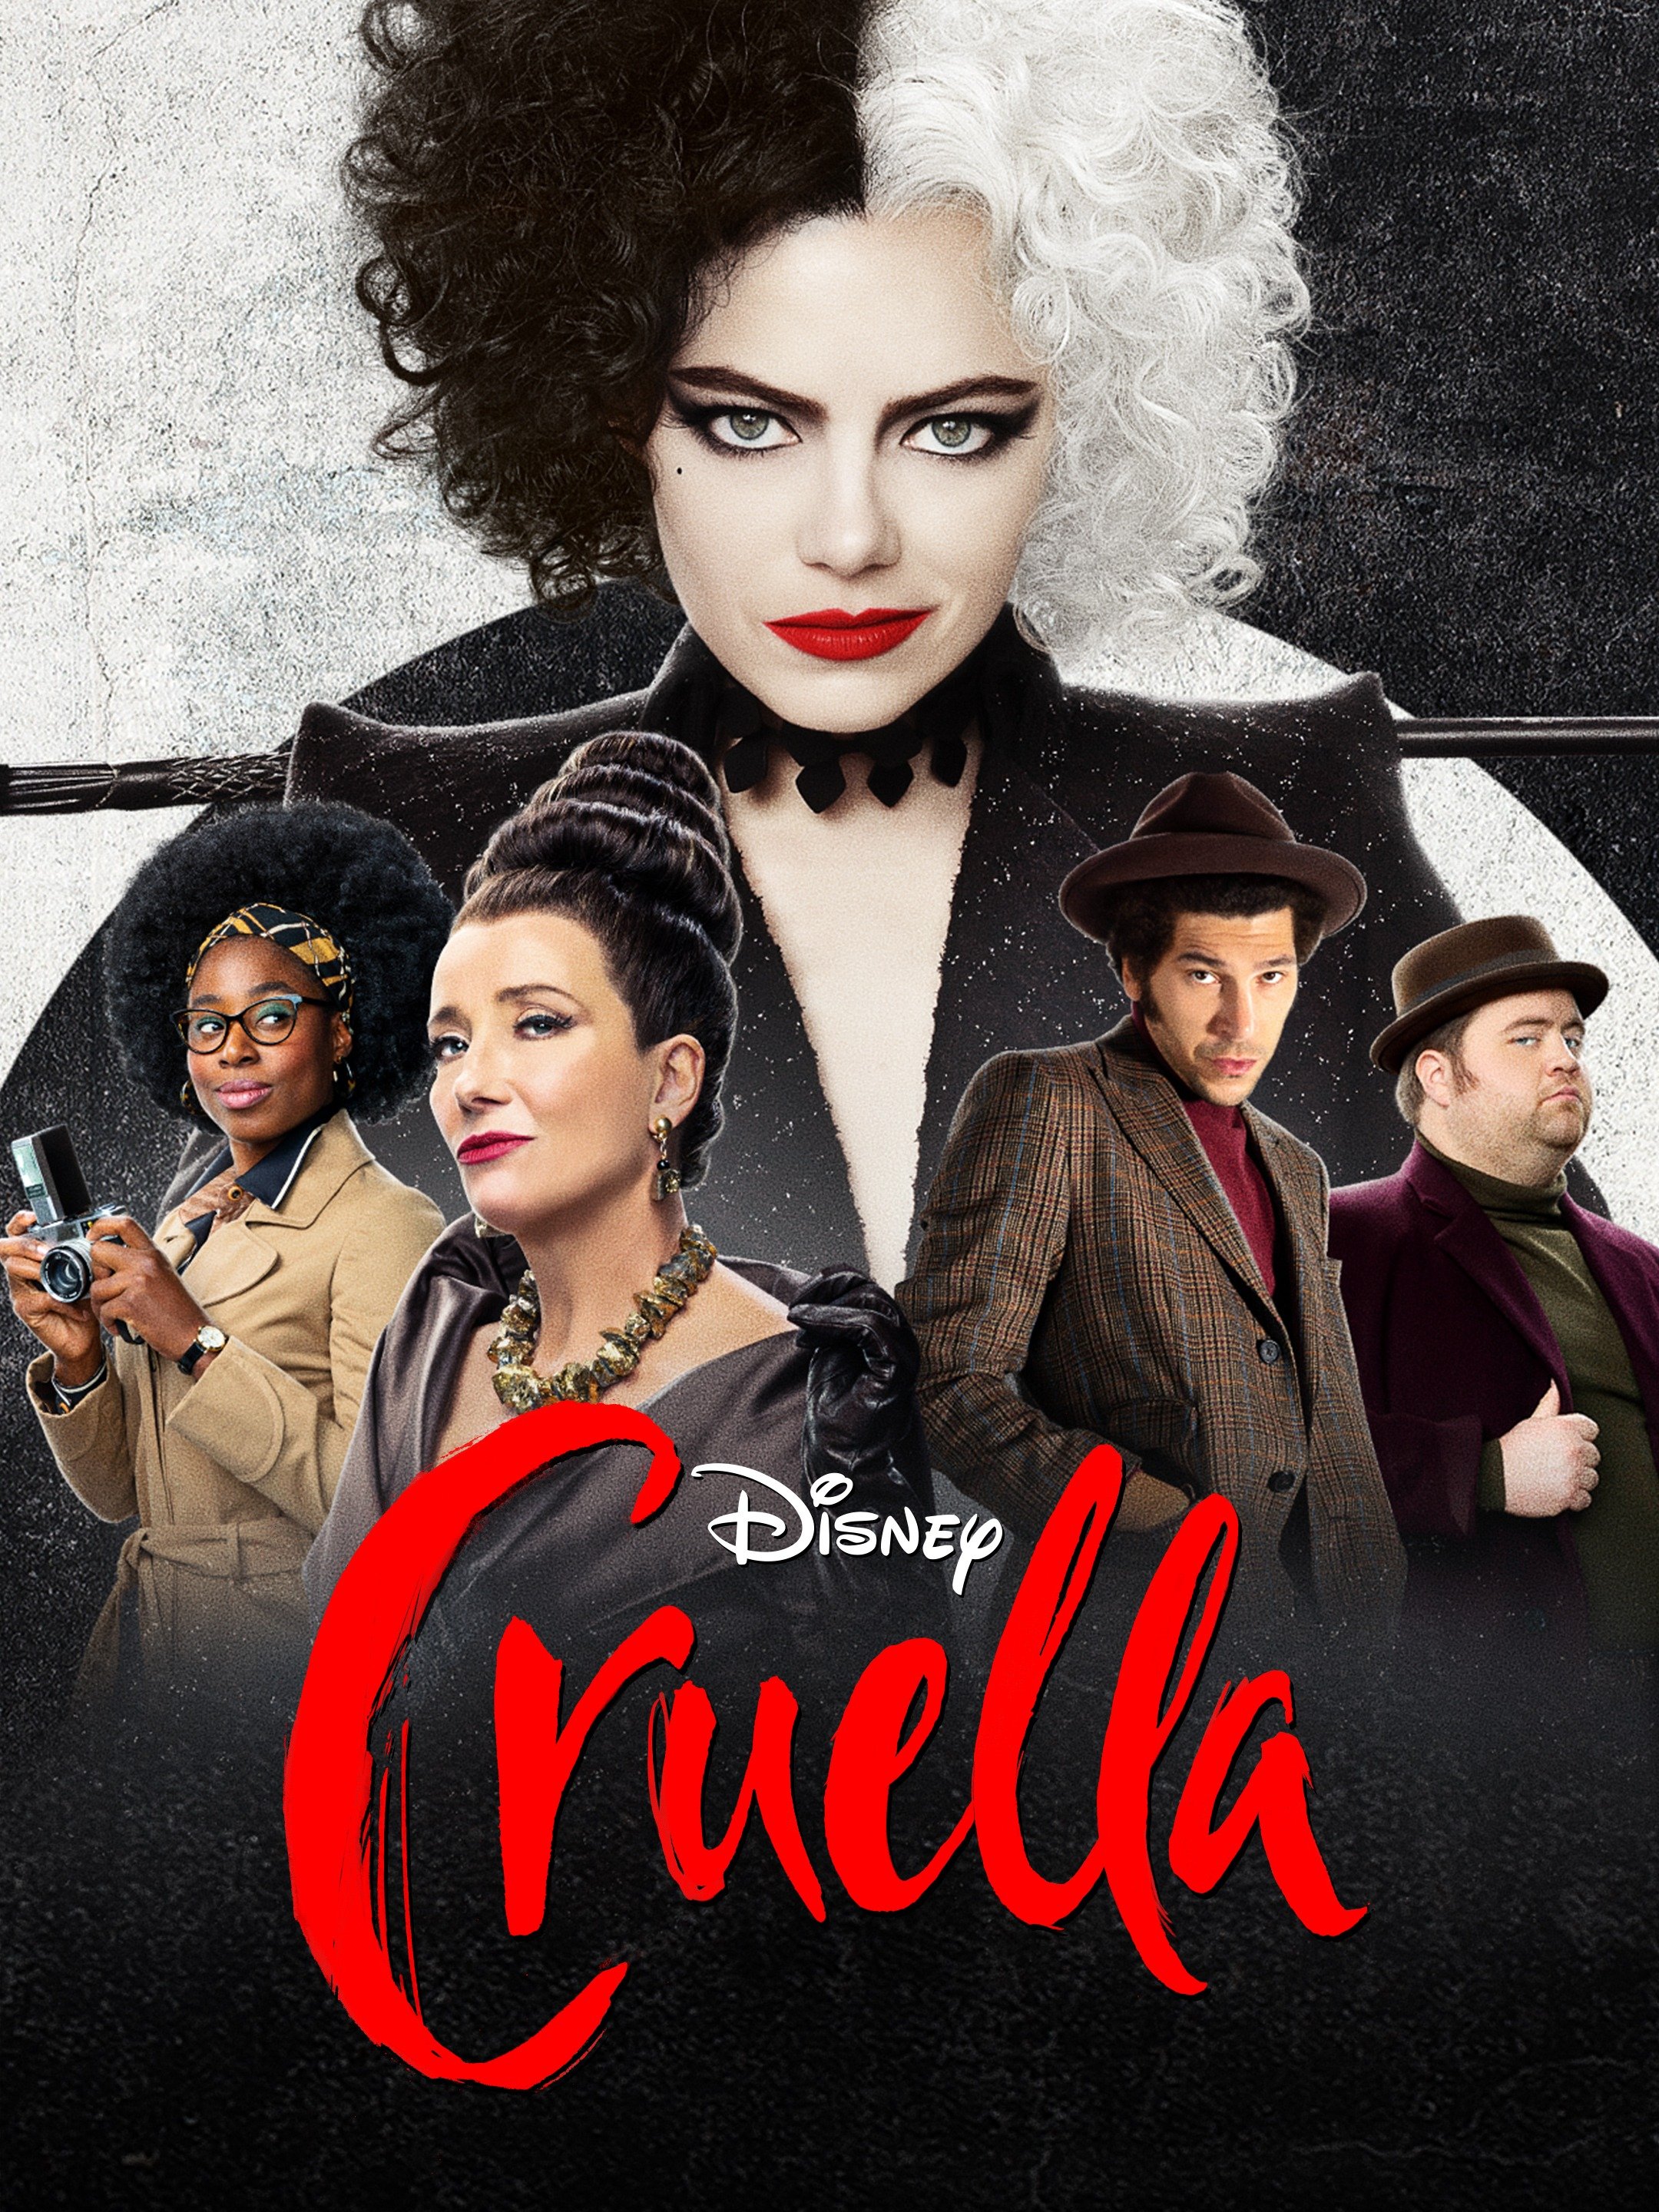 Cruella Trailer 2 Trailers & Videos Rotten Tomatoes